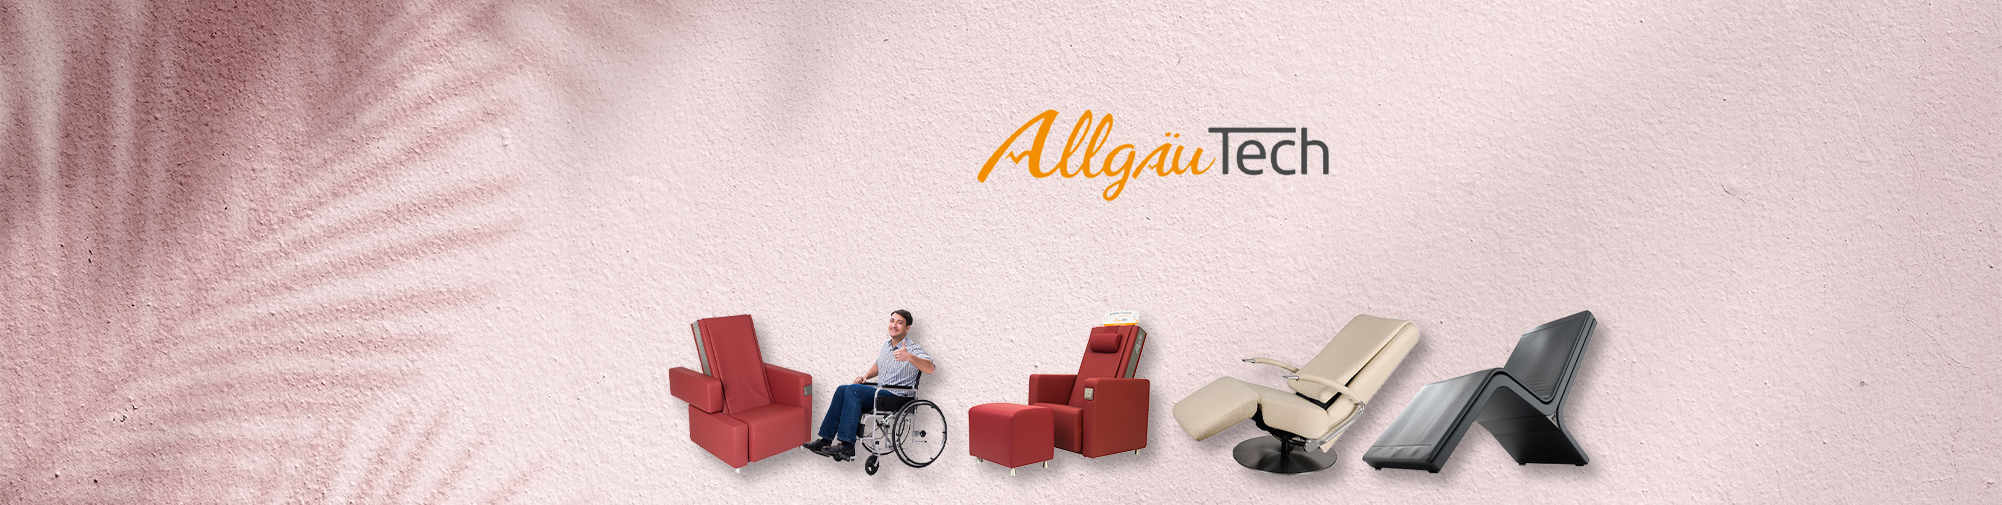 AllgäuTech | Massage Chair World